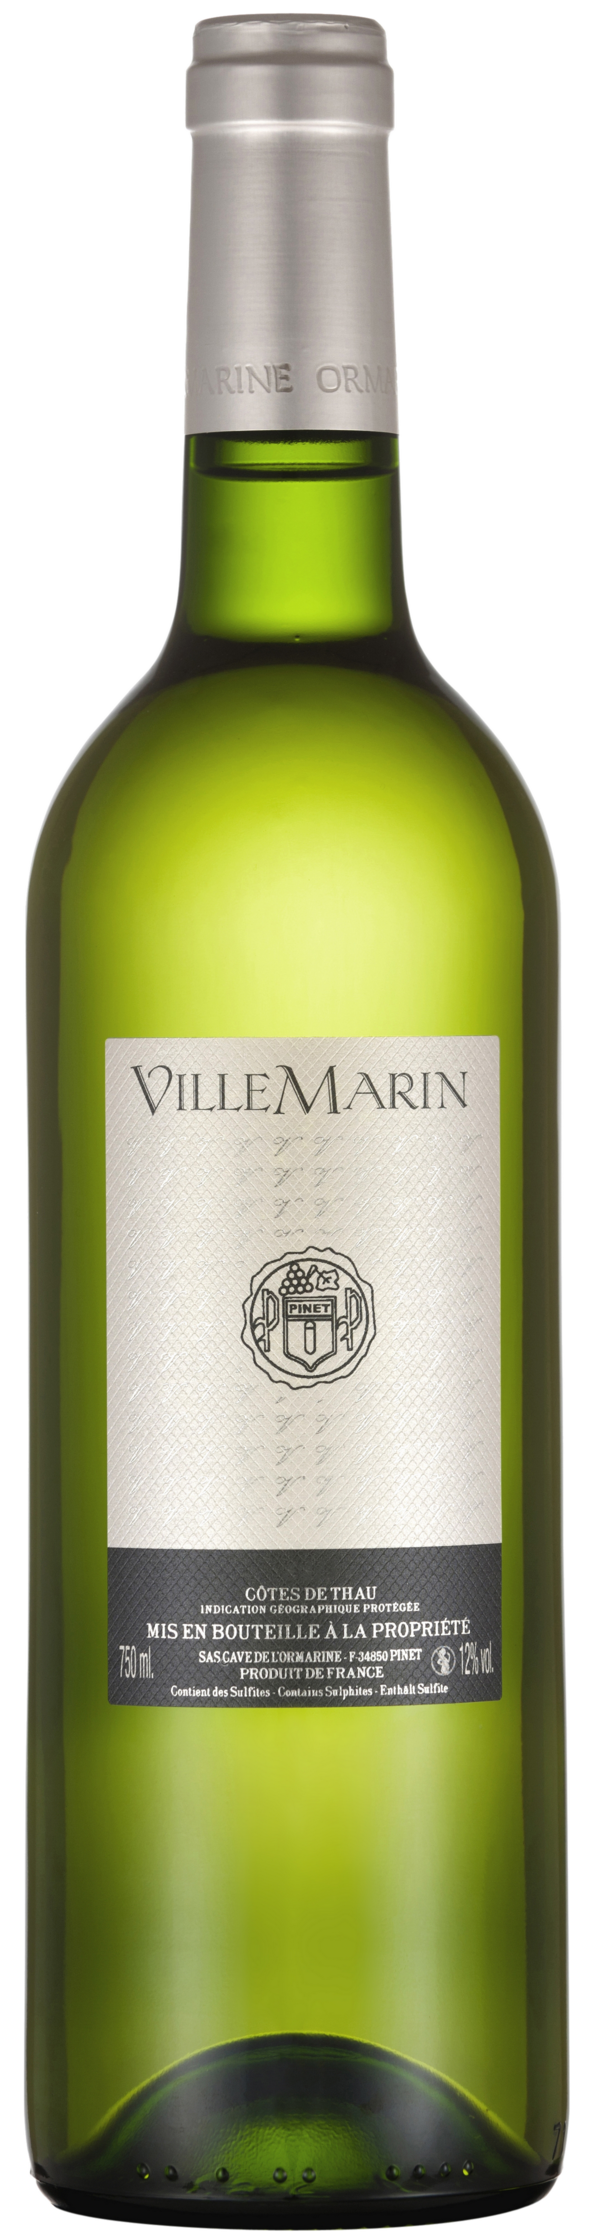 Villemarin - IGP Côtes de Thau - White